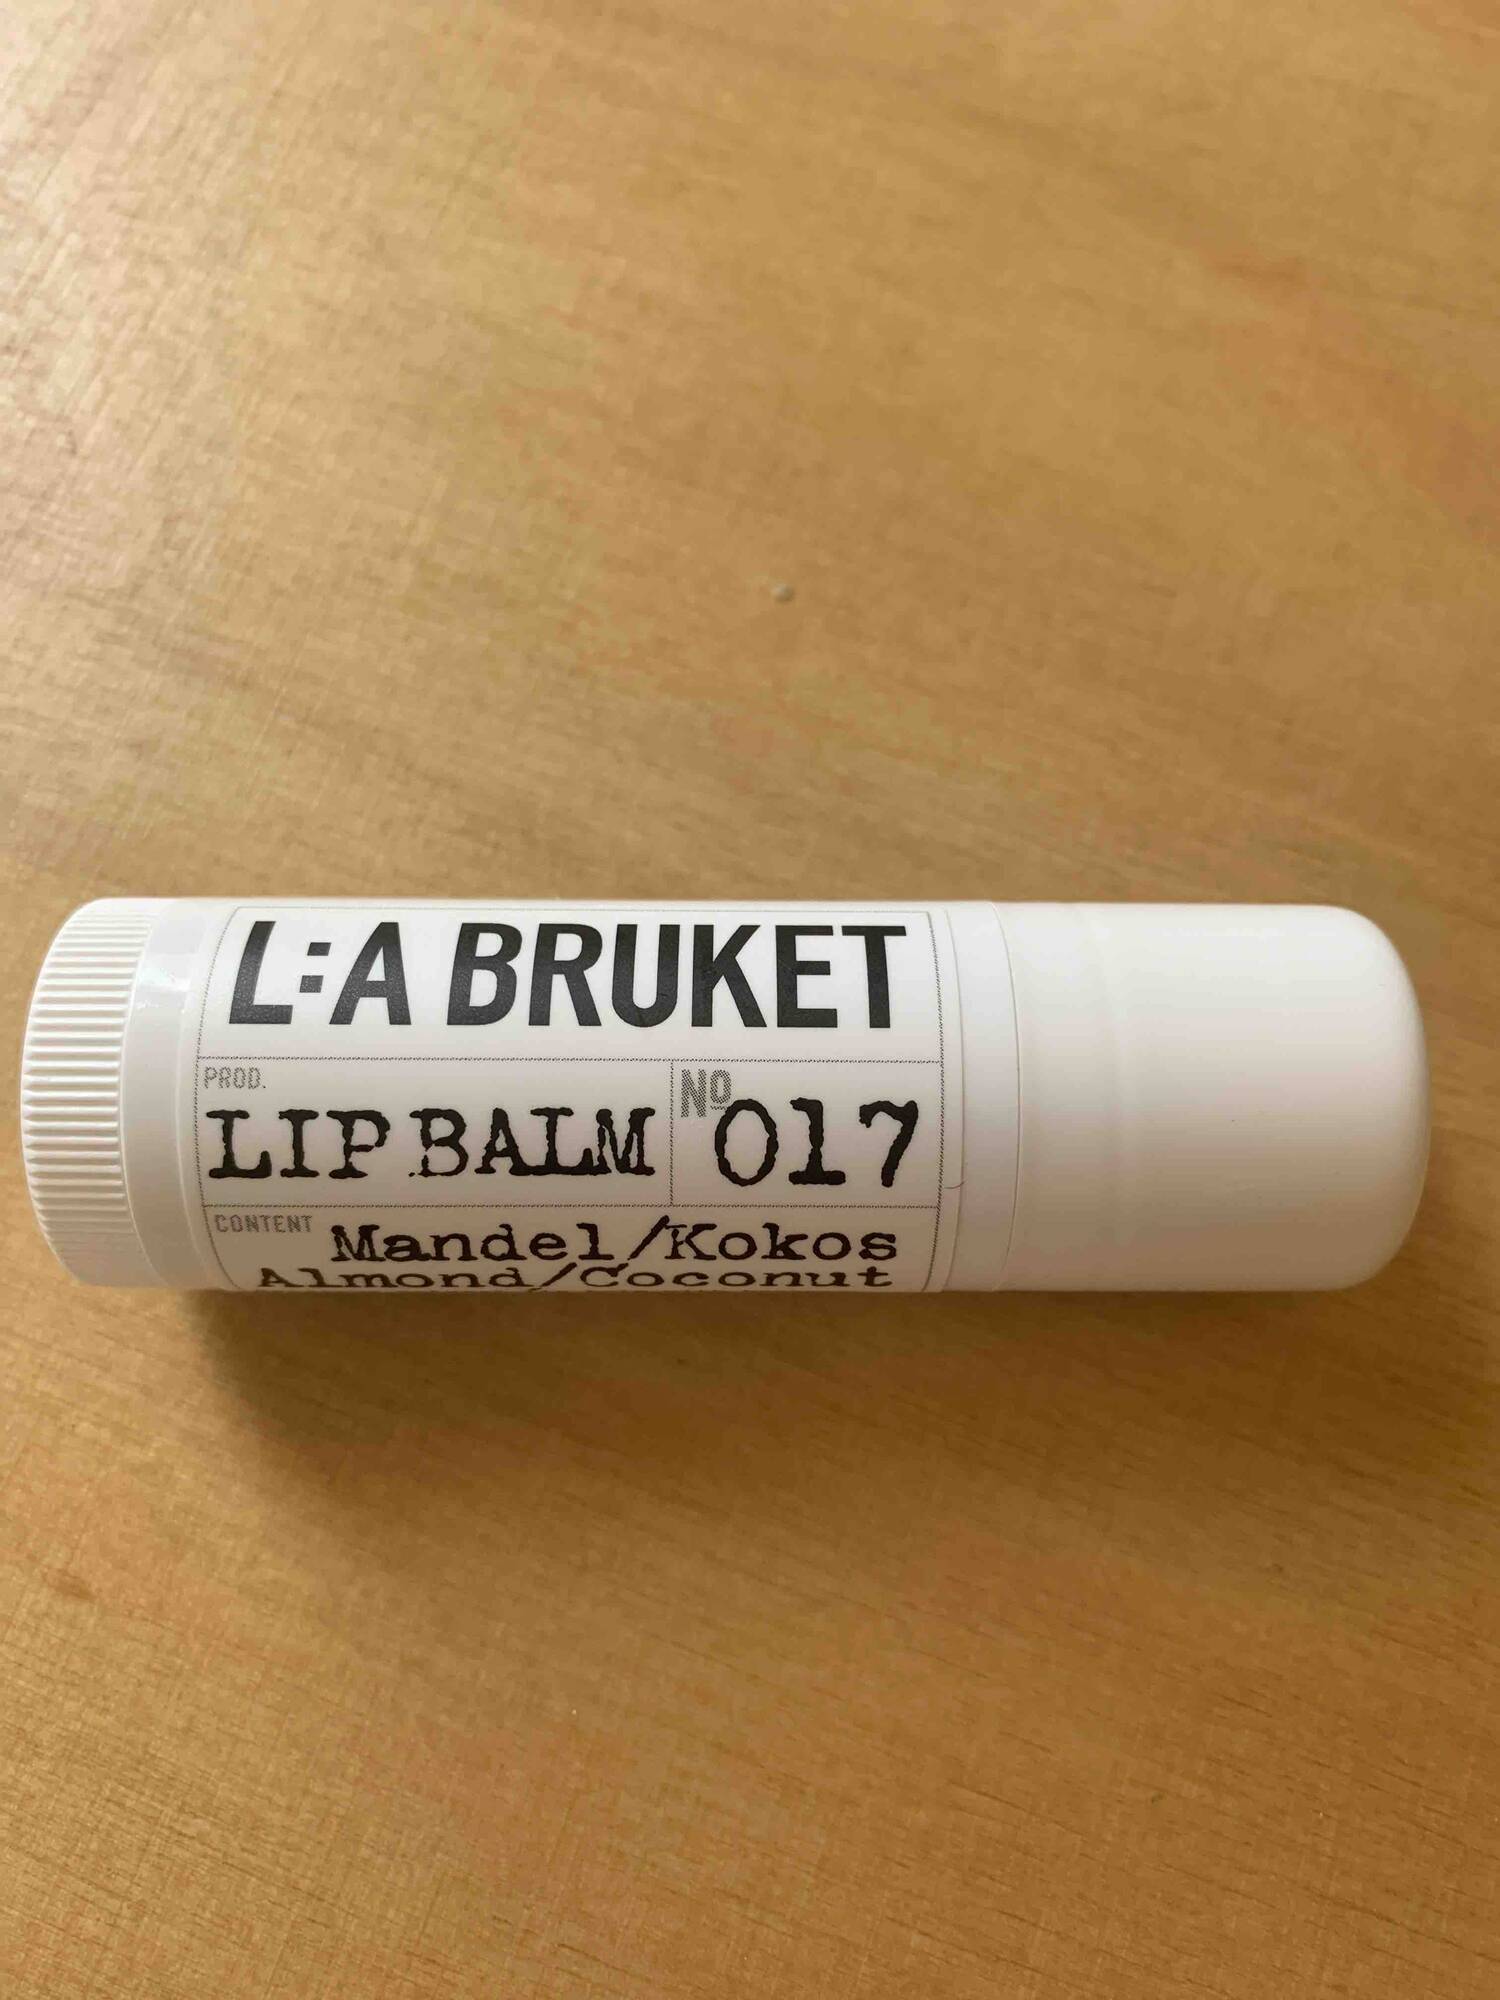 L:A BRUKET - Lip balm Almond / Coconut